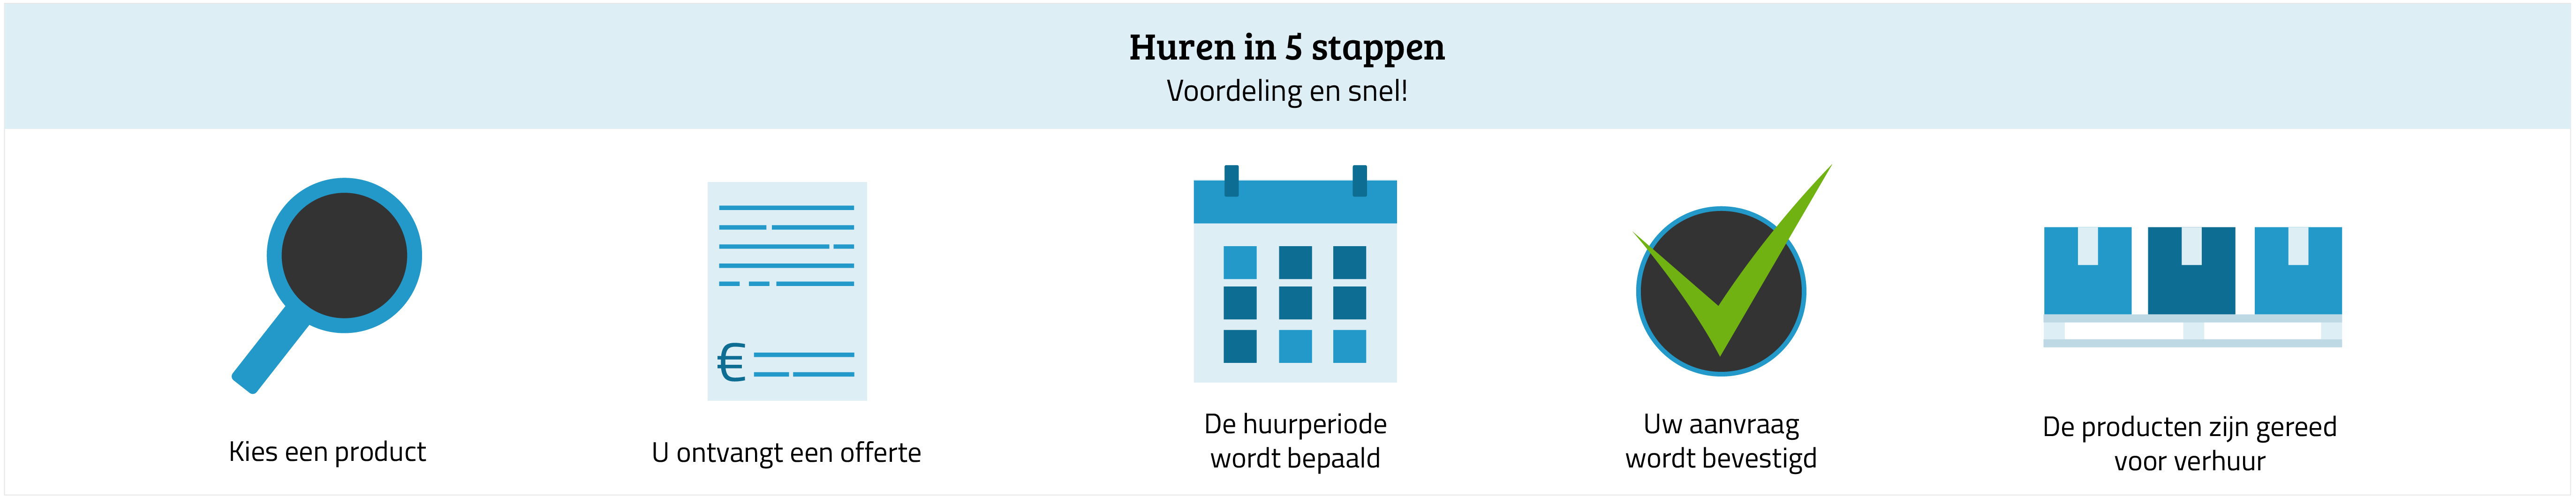 Verhuur_nl2